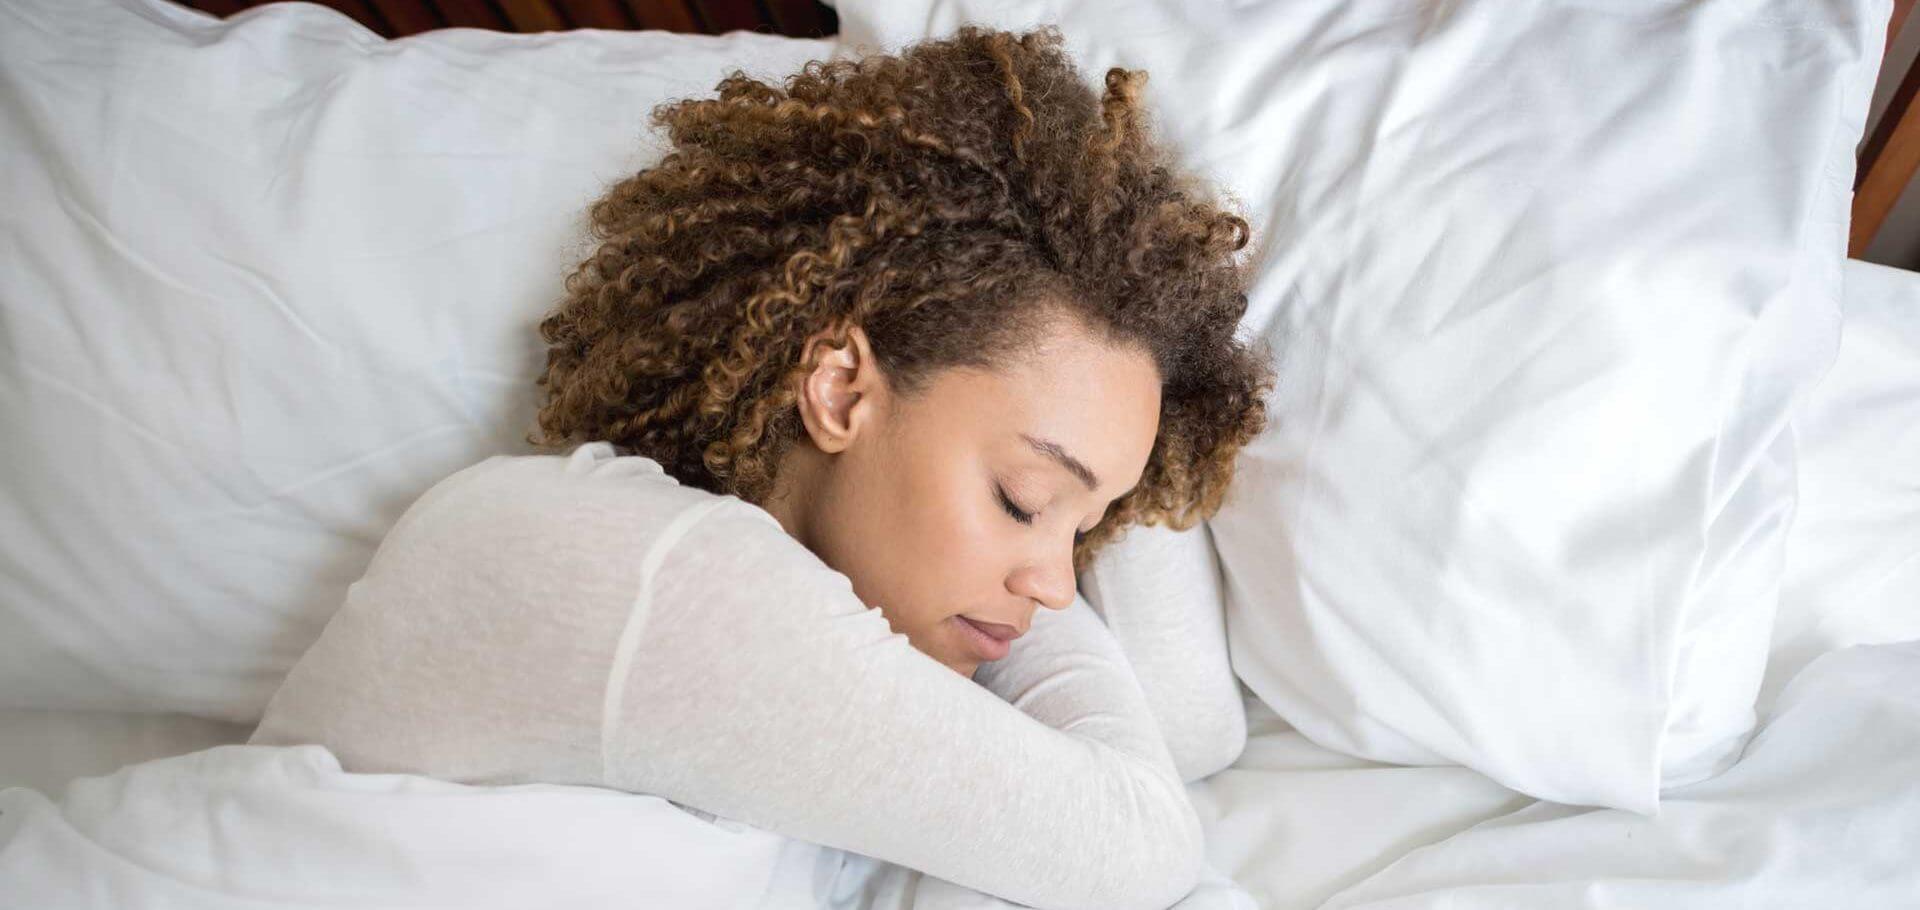 충분한 휴식을 취하십시오 : 글리신은 더 깊고 건강한 수면을 즐길 수 있도록 도와줍니다.